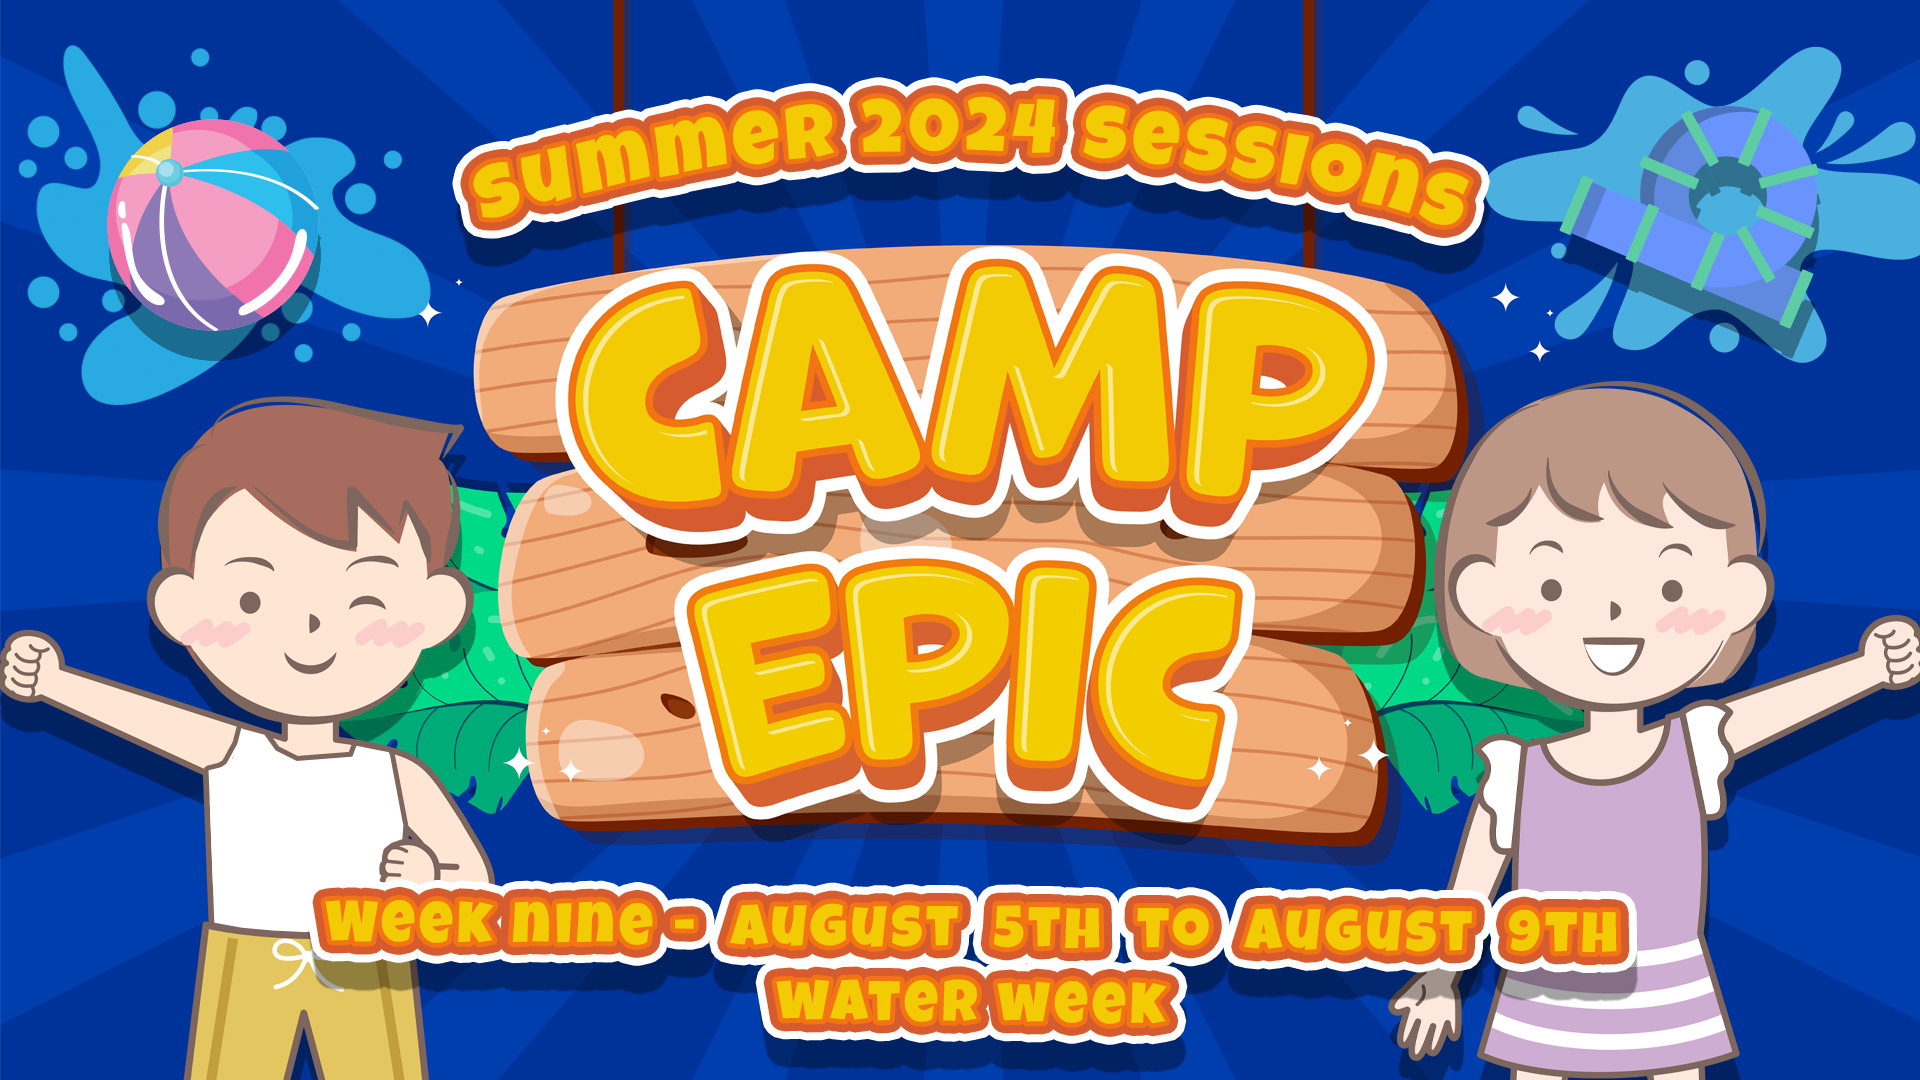 Camp Epic Week 9